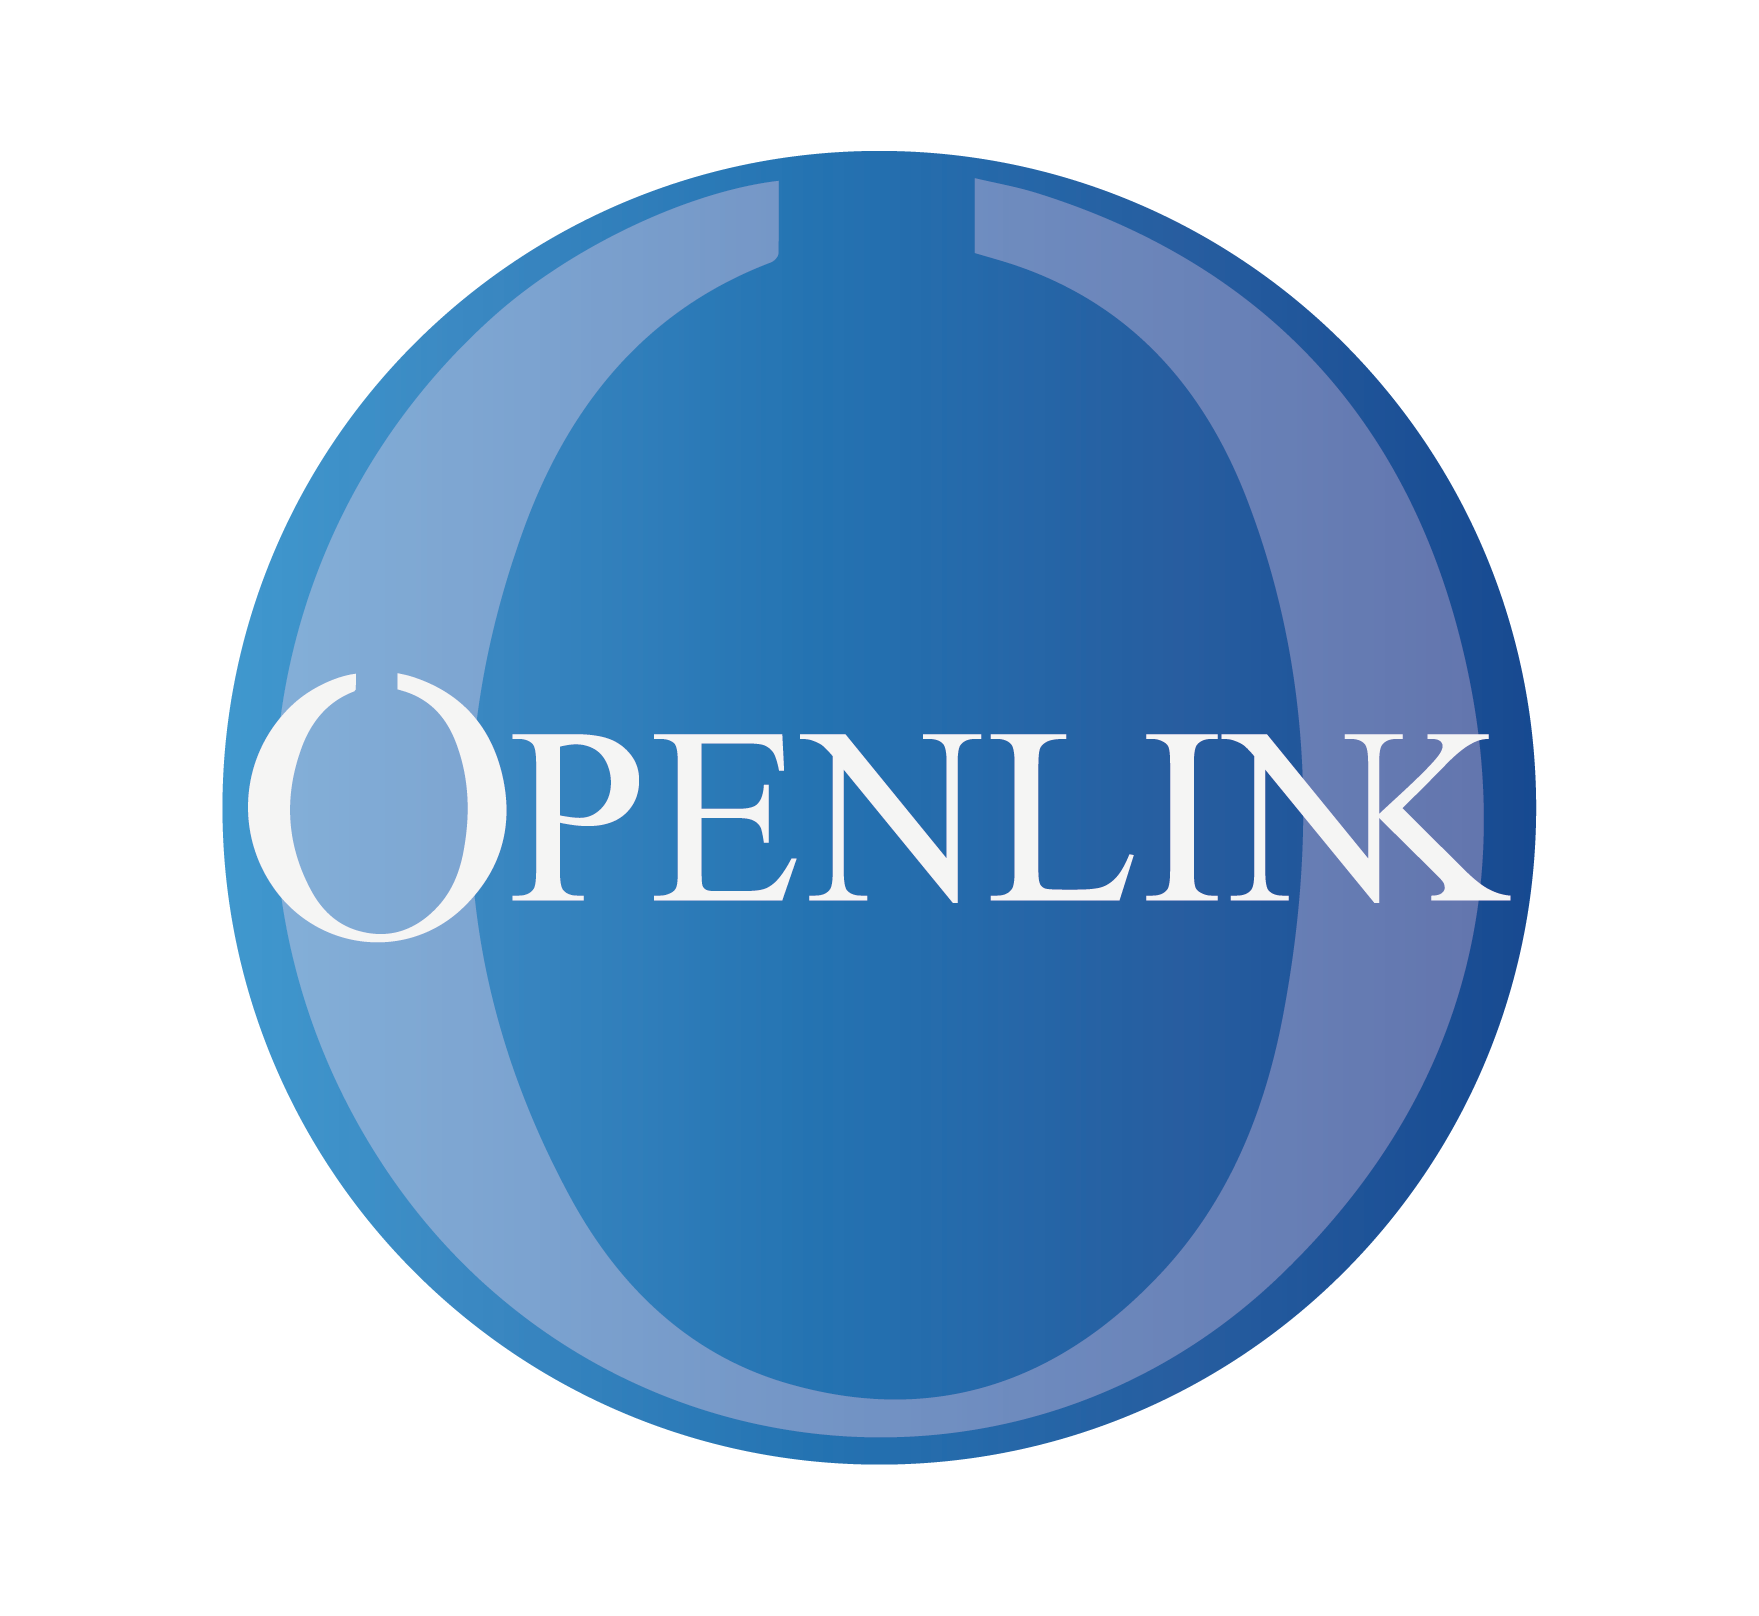 Openlink